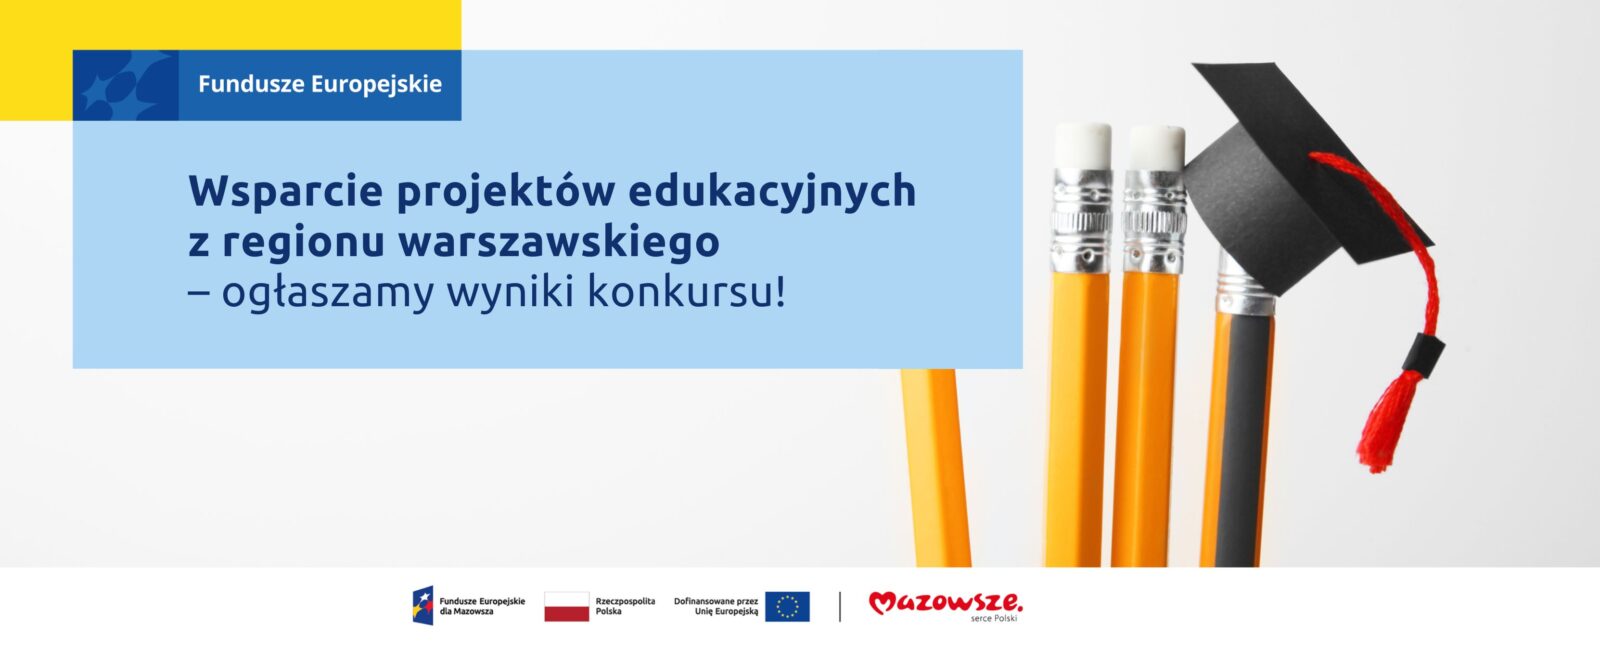 Na grafice znajduje się hasło: Wsparcie projektów edukacyjnych z regionu warszawskiego – ogłaszamy wyniki konkursu! Obok zdjęcie przedstawiające ołówki oraz czapkę akademicką